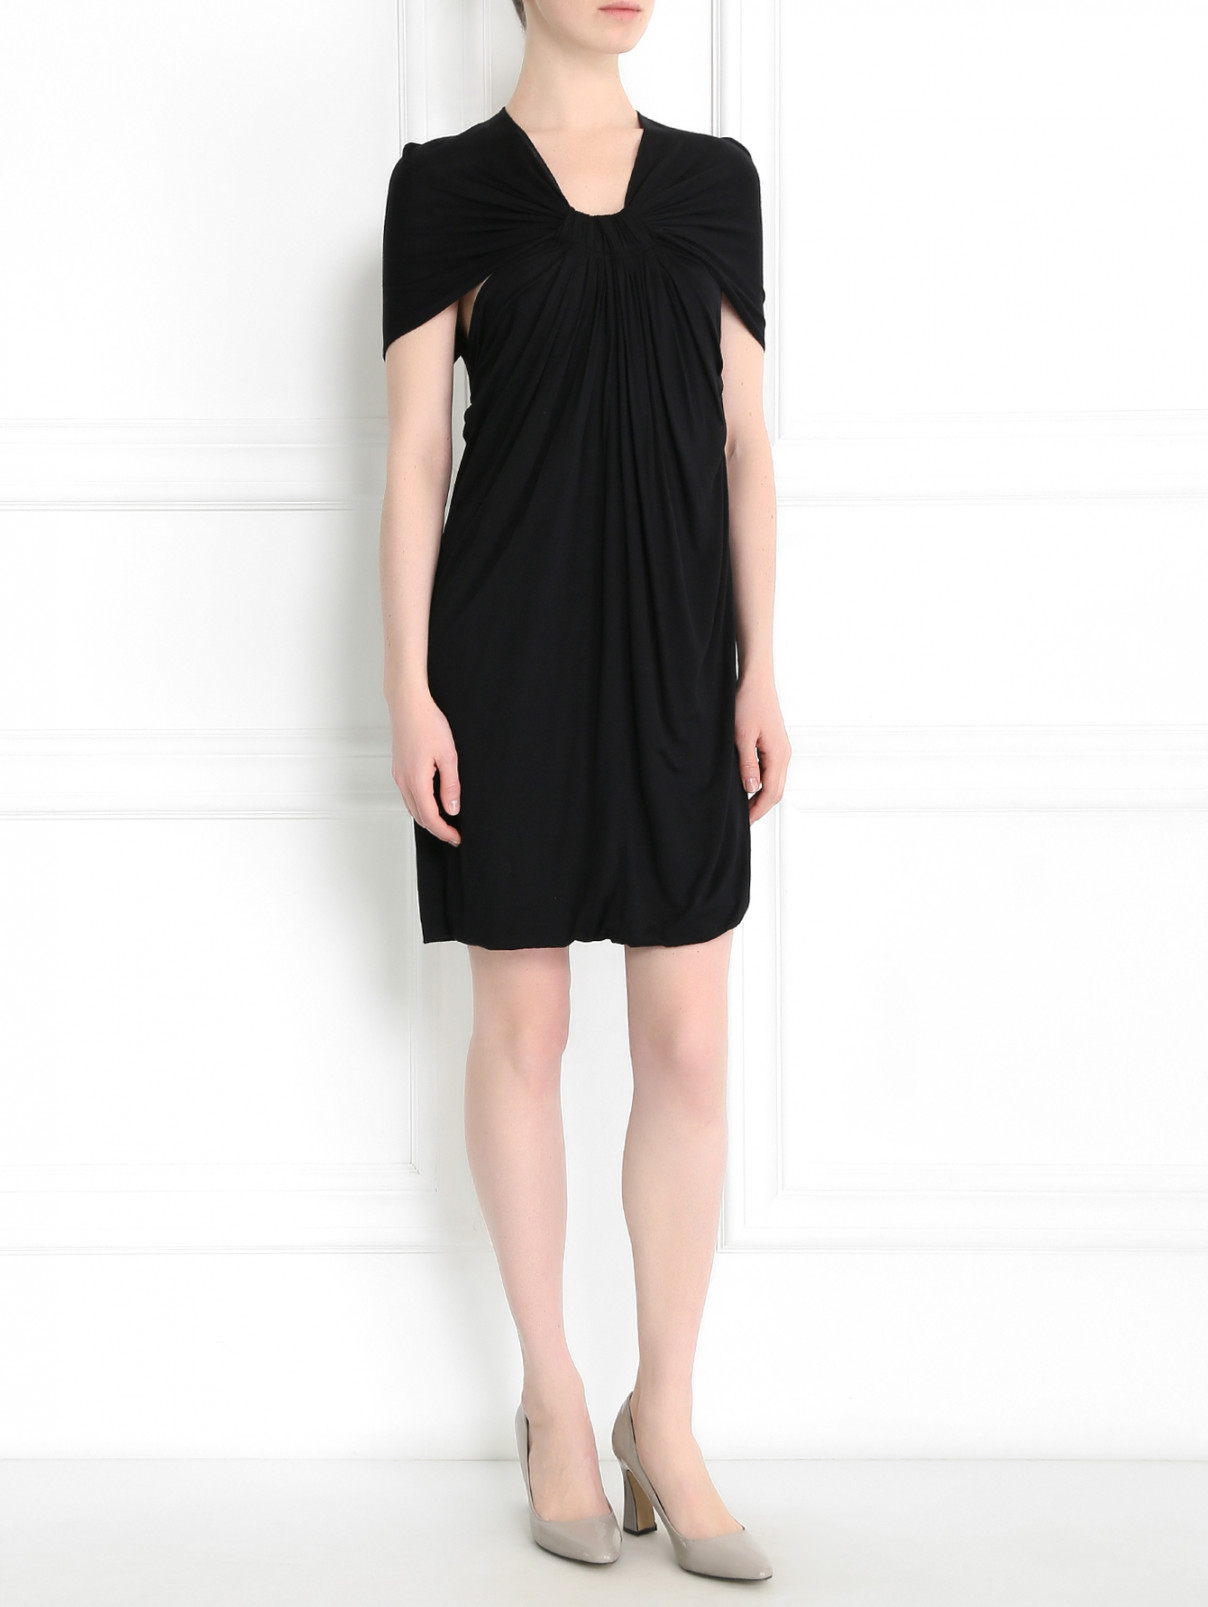 Трикотажное платье с вырезом на спине Cut 25  –  Модель Общий вид  – Цвет:  Черный